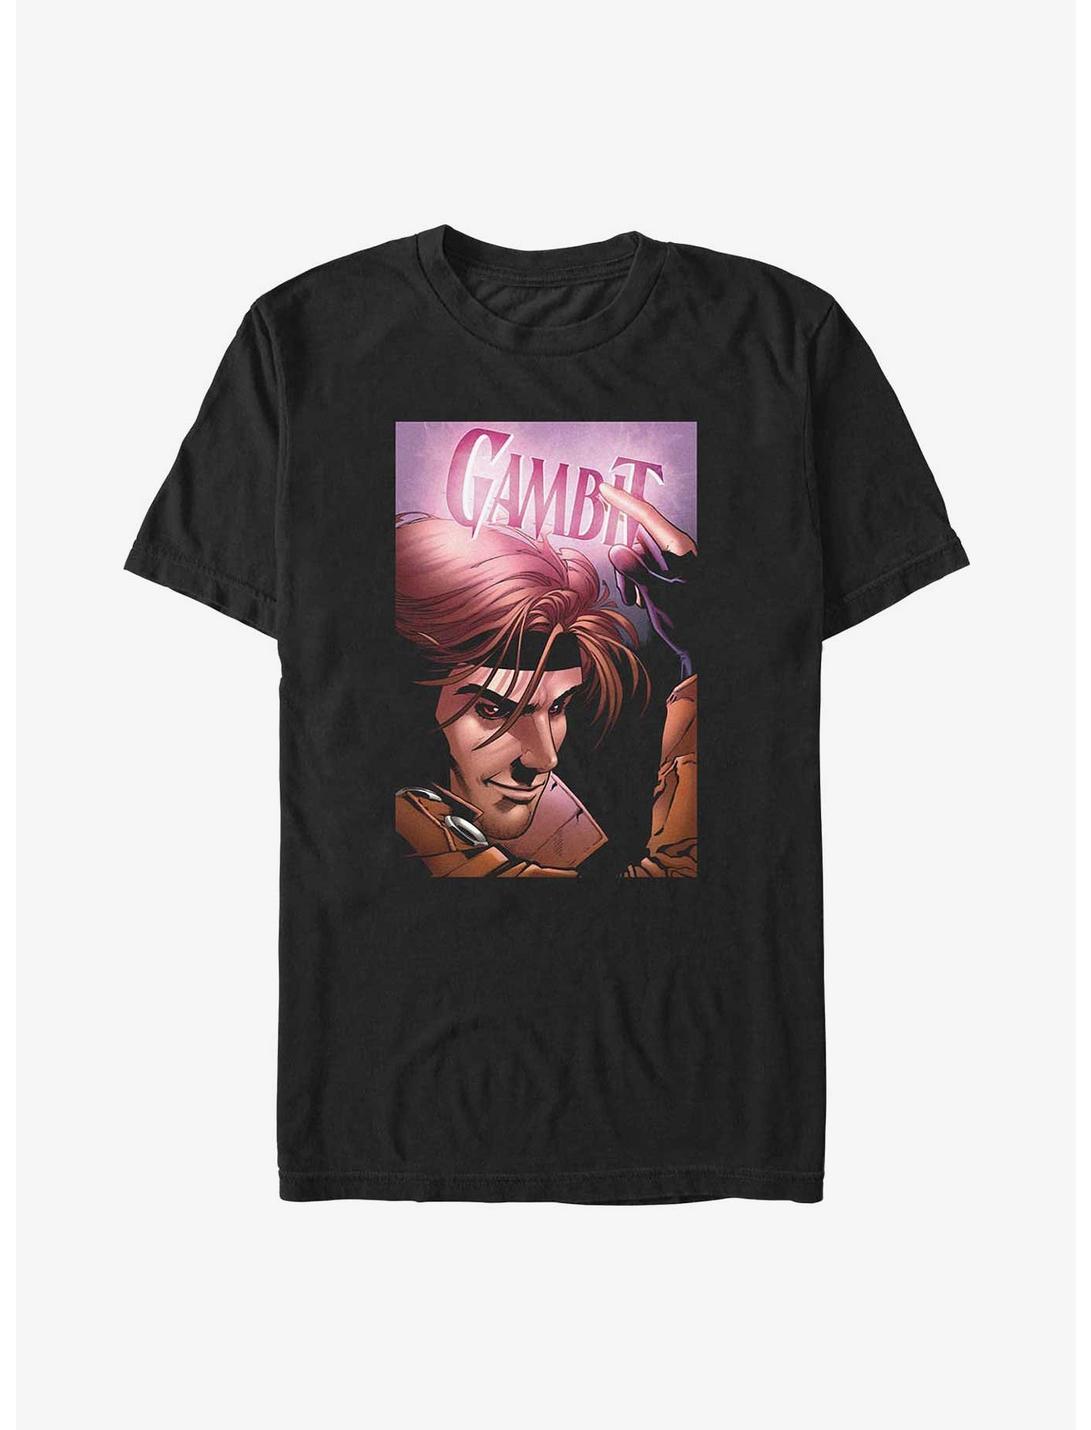 X-Men Gambit Poster Big & Tall T-Shirt, BLACK, hi-res